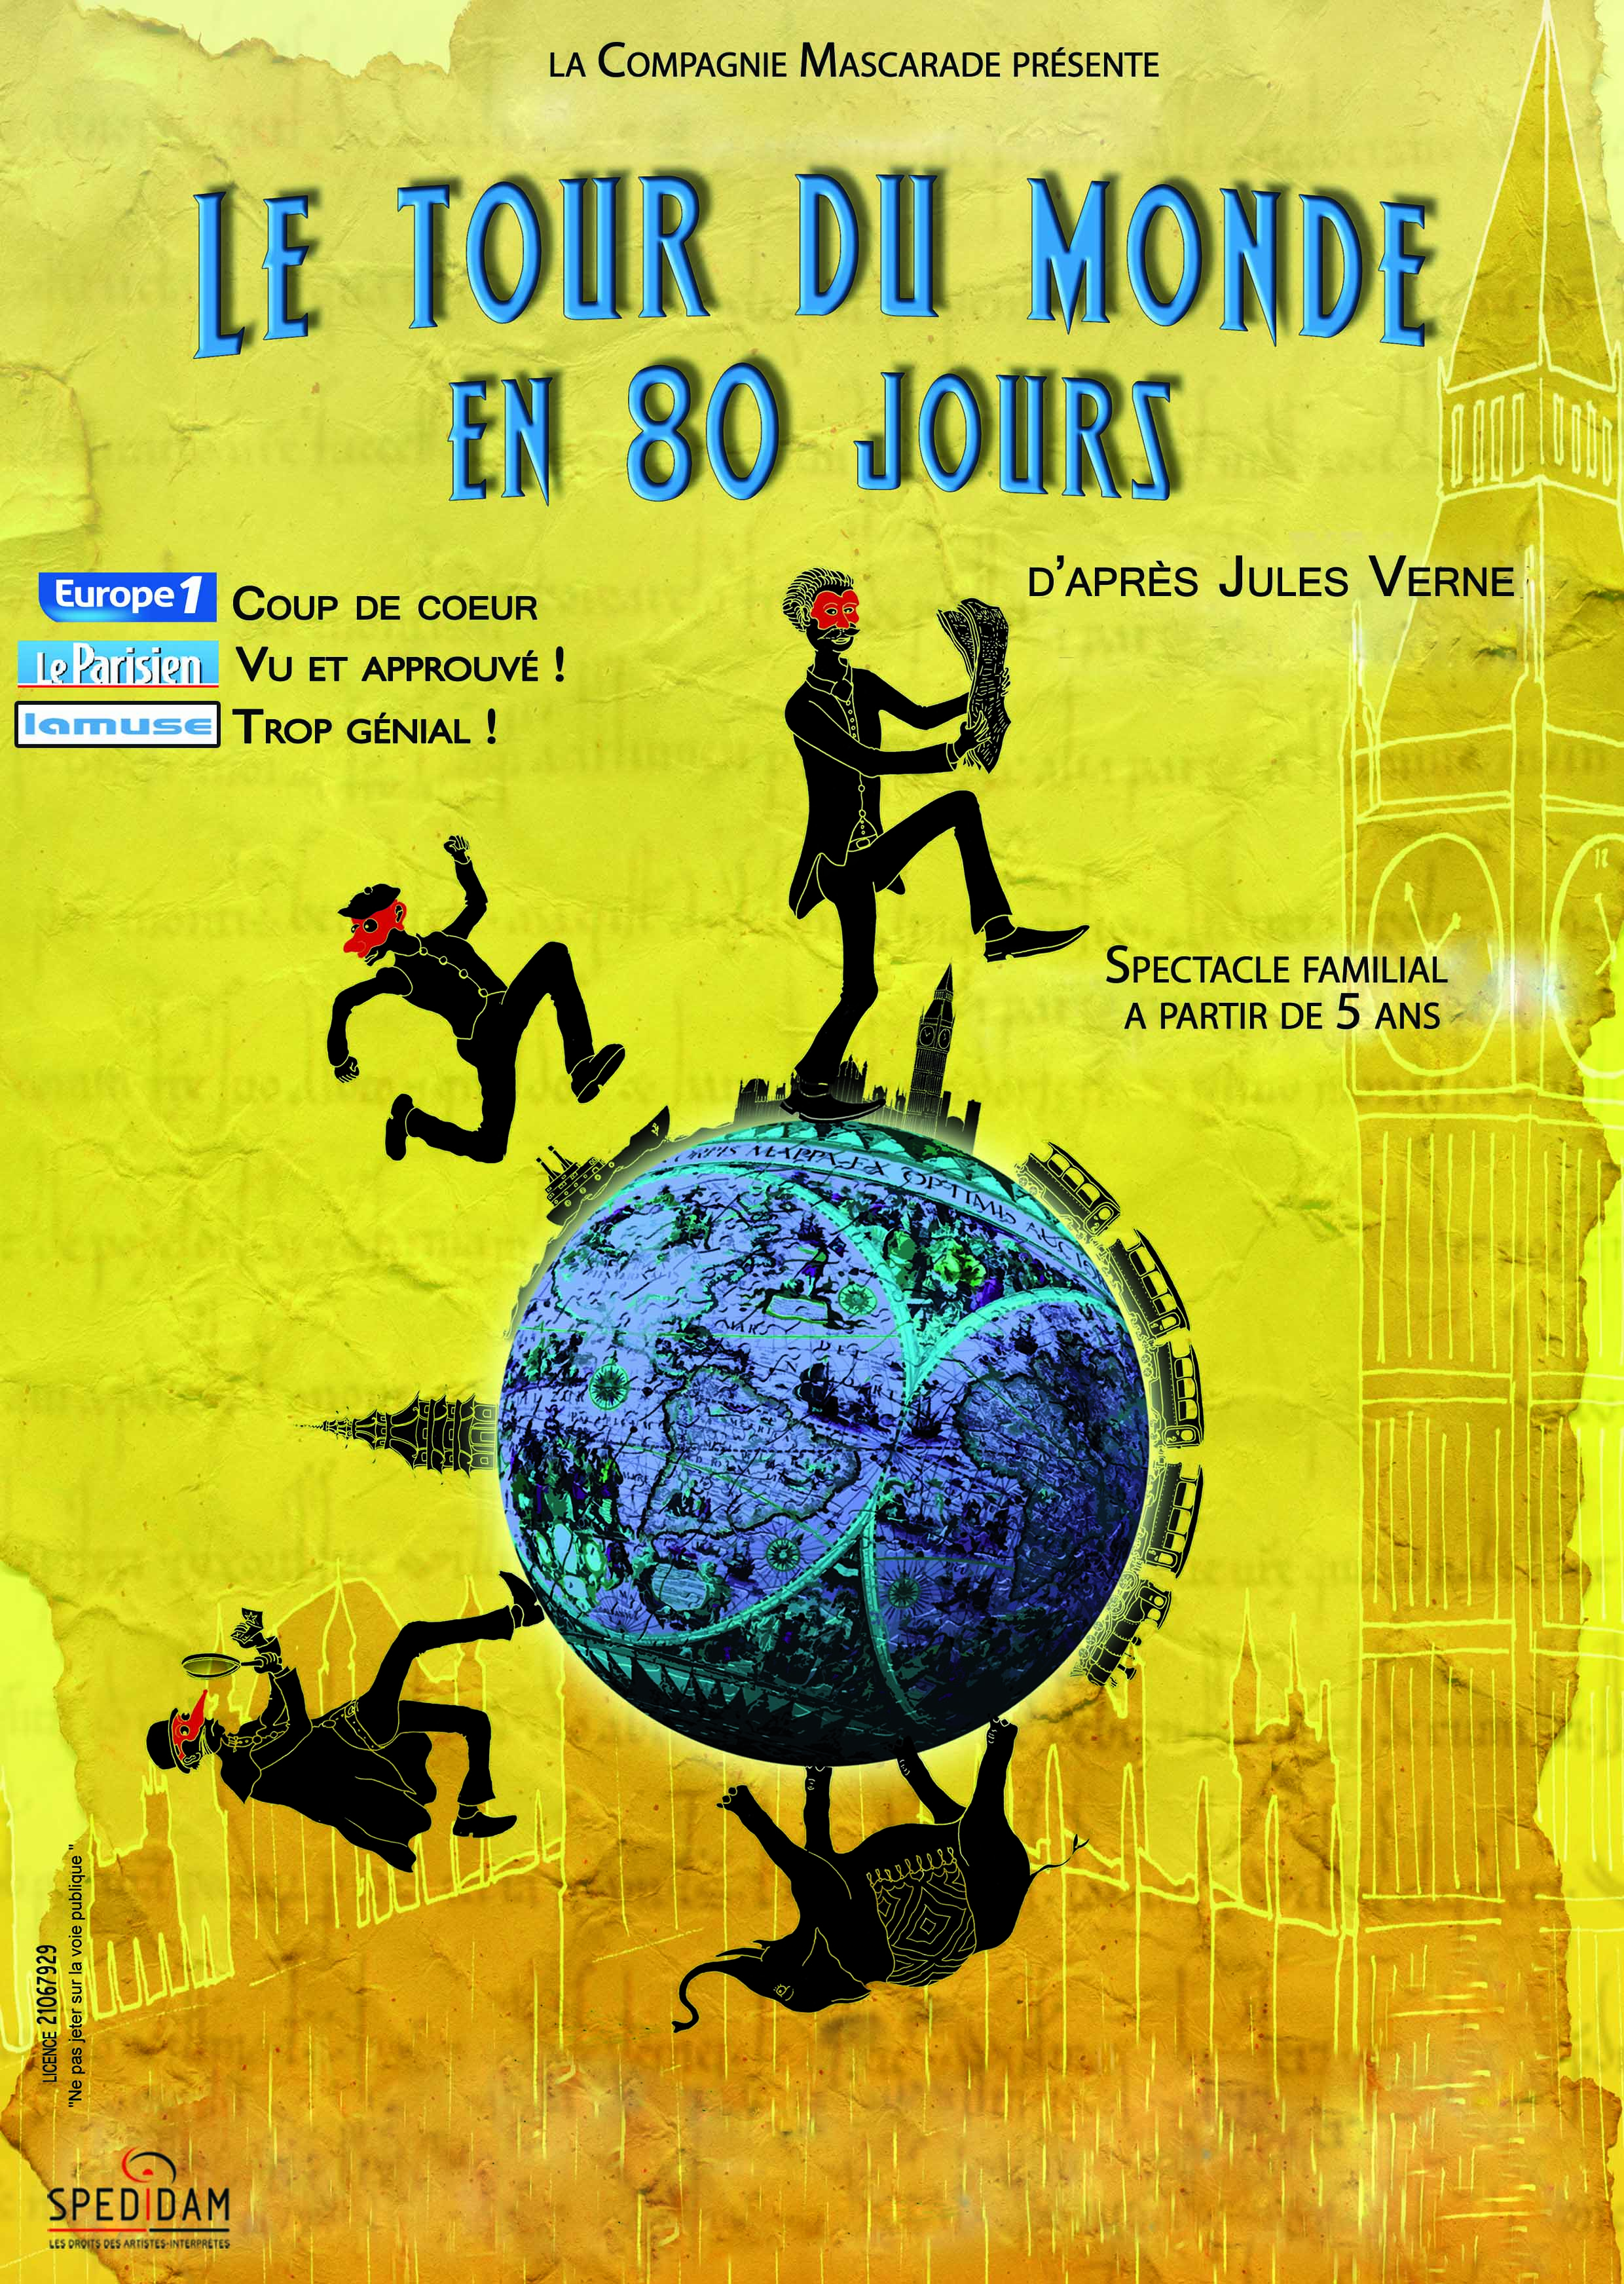 Le Tour du monde en 80 jours - Cie Mascarade : spectacle jeune public